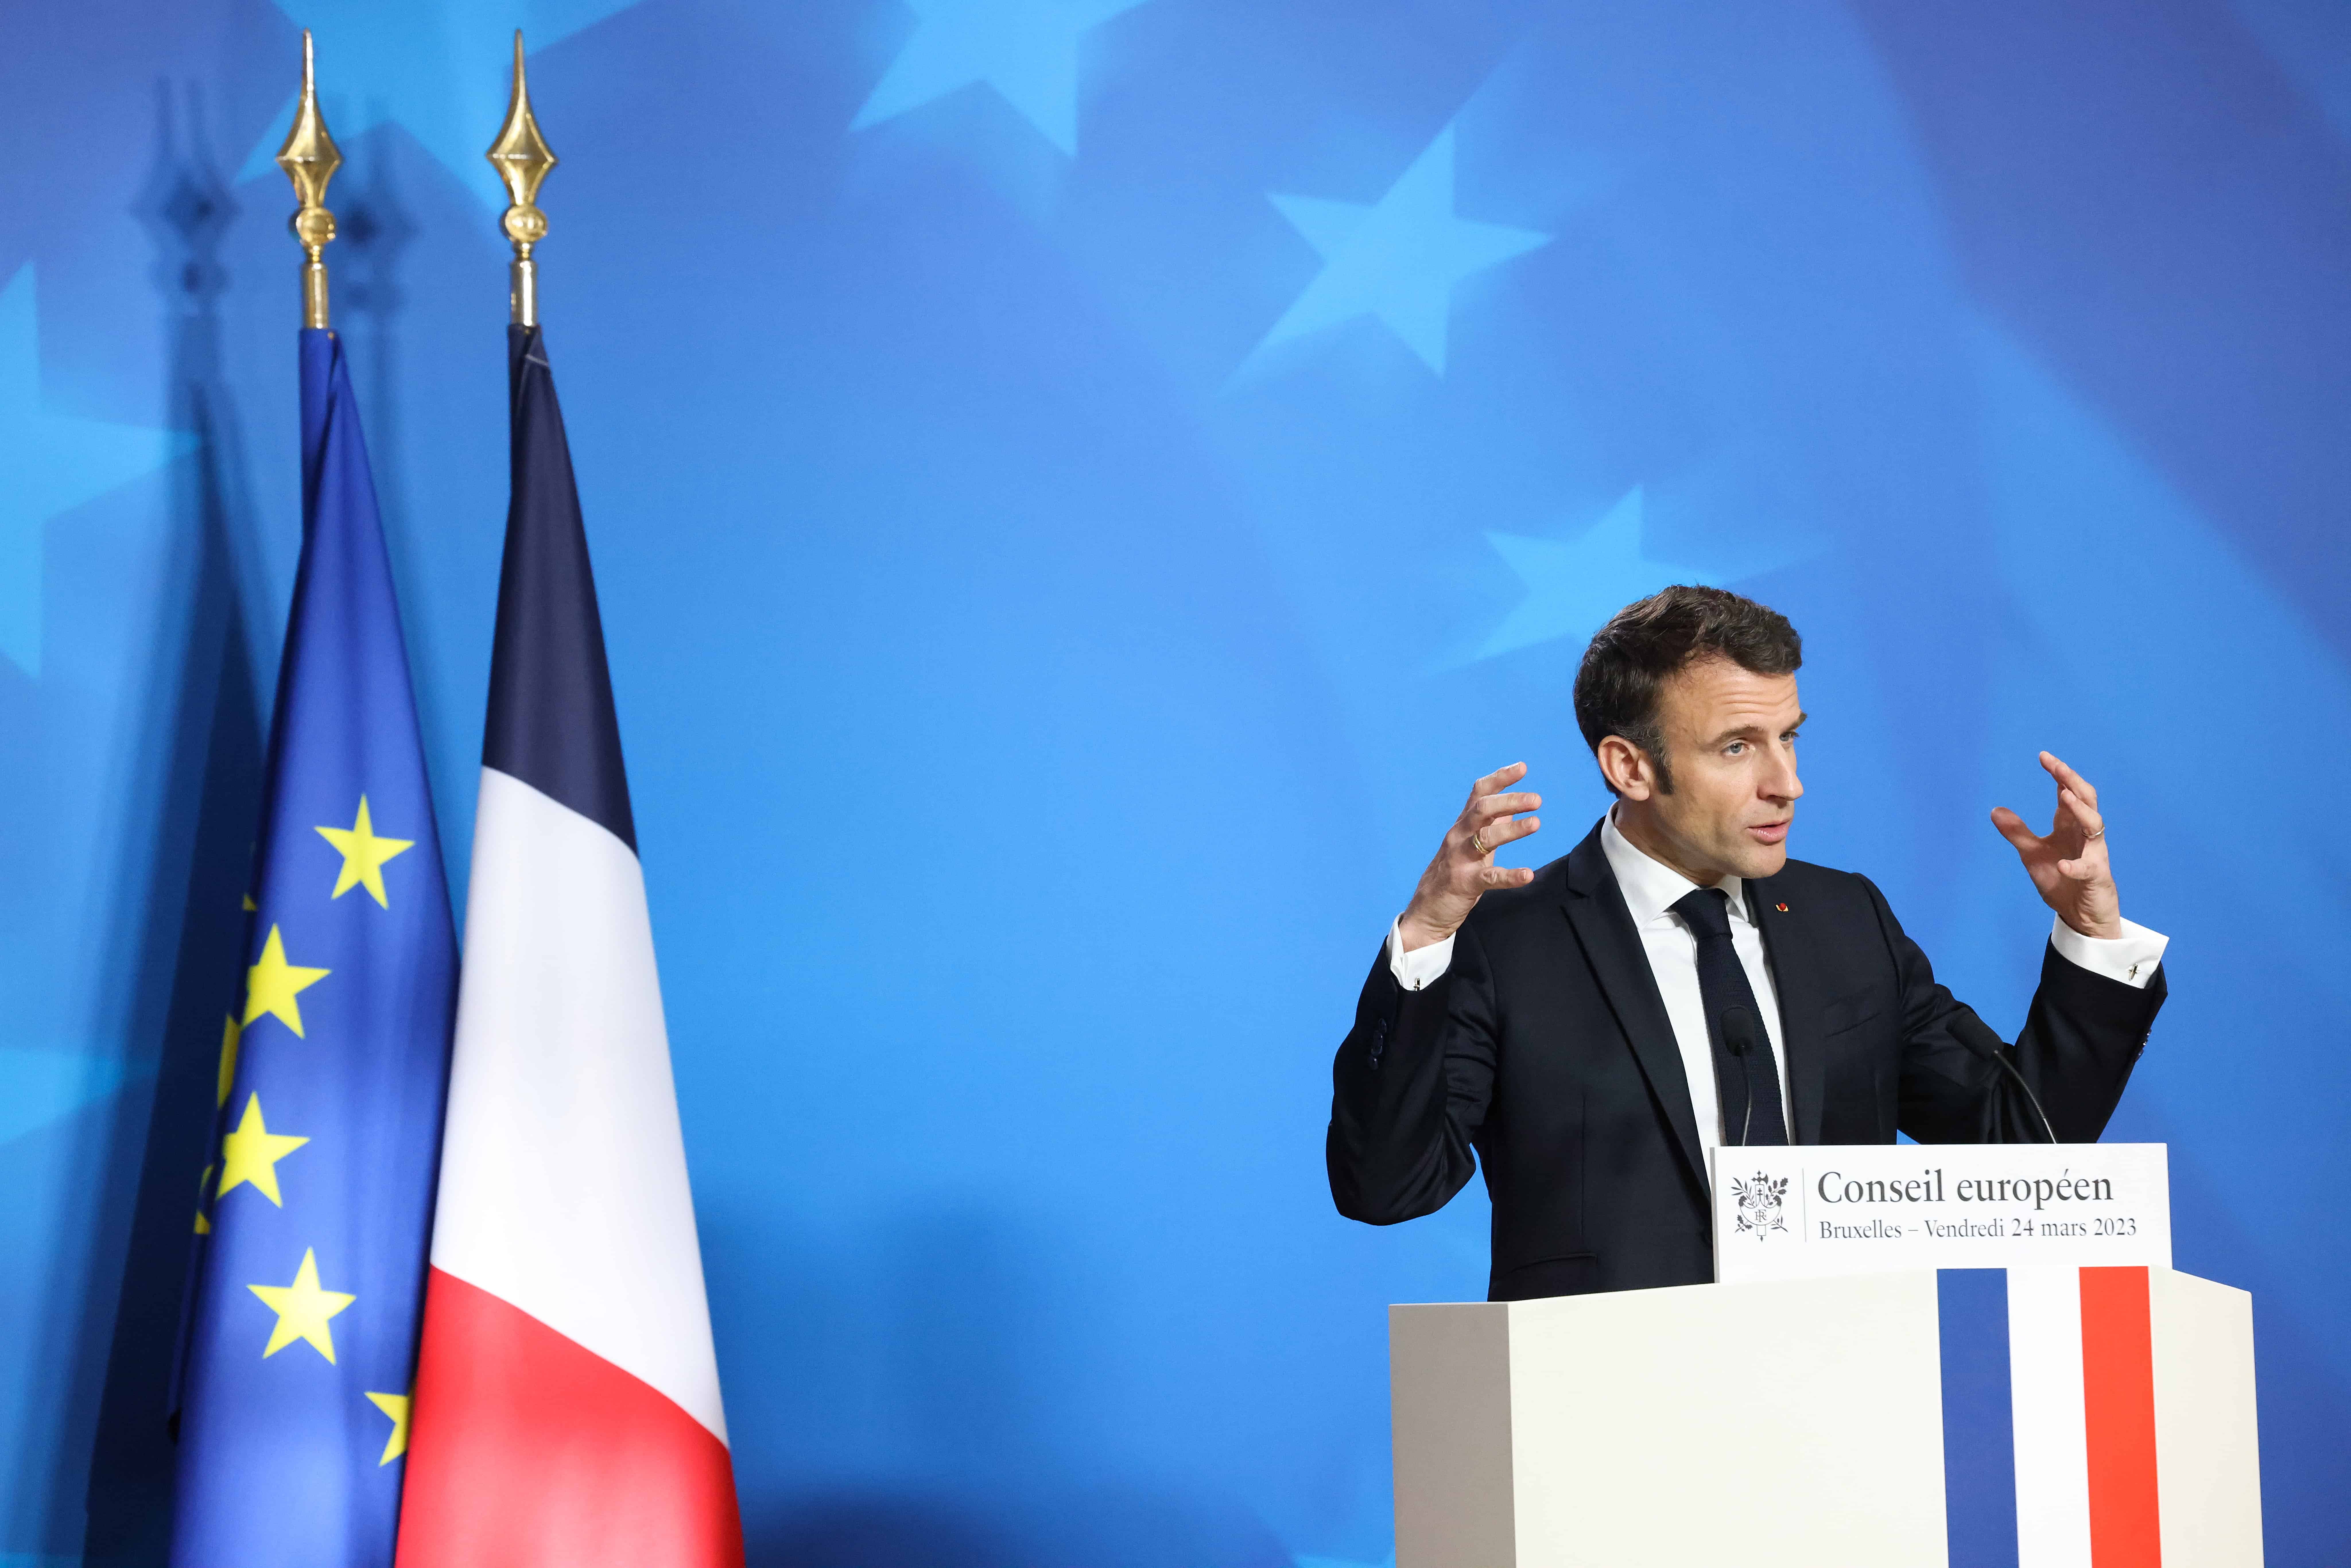 Přečtete si více ze článku Lídři EU: Emmanuel Macron, od finančního inspektora a investičního bankéře po prezidenta Francie